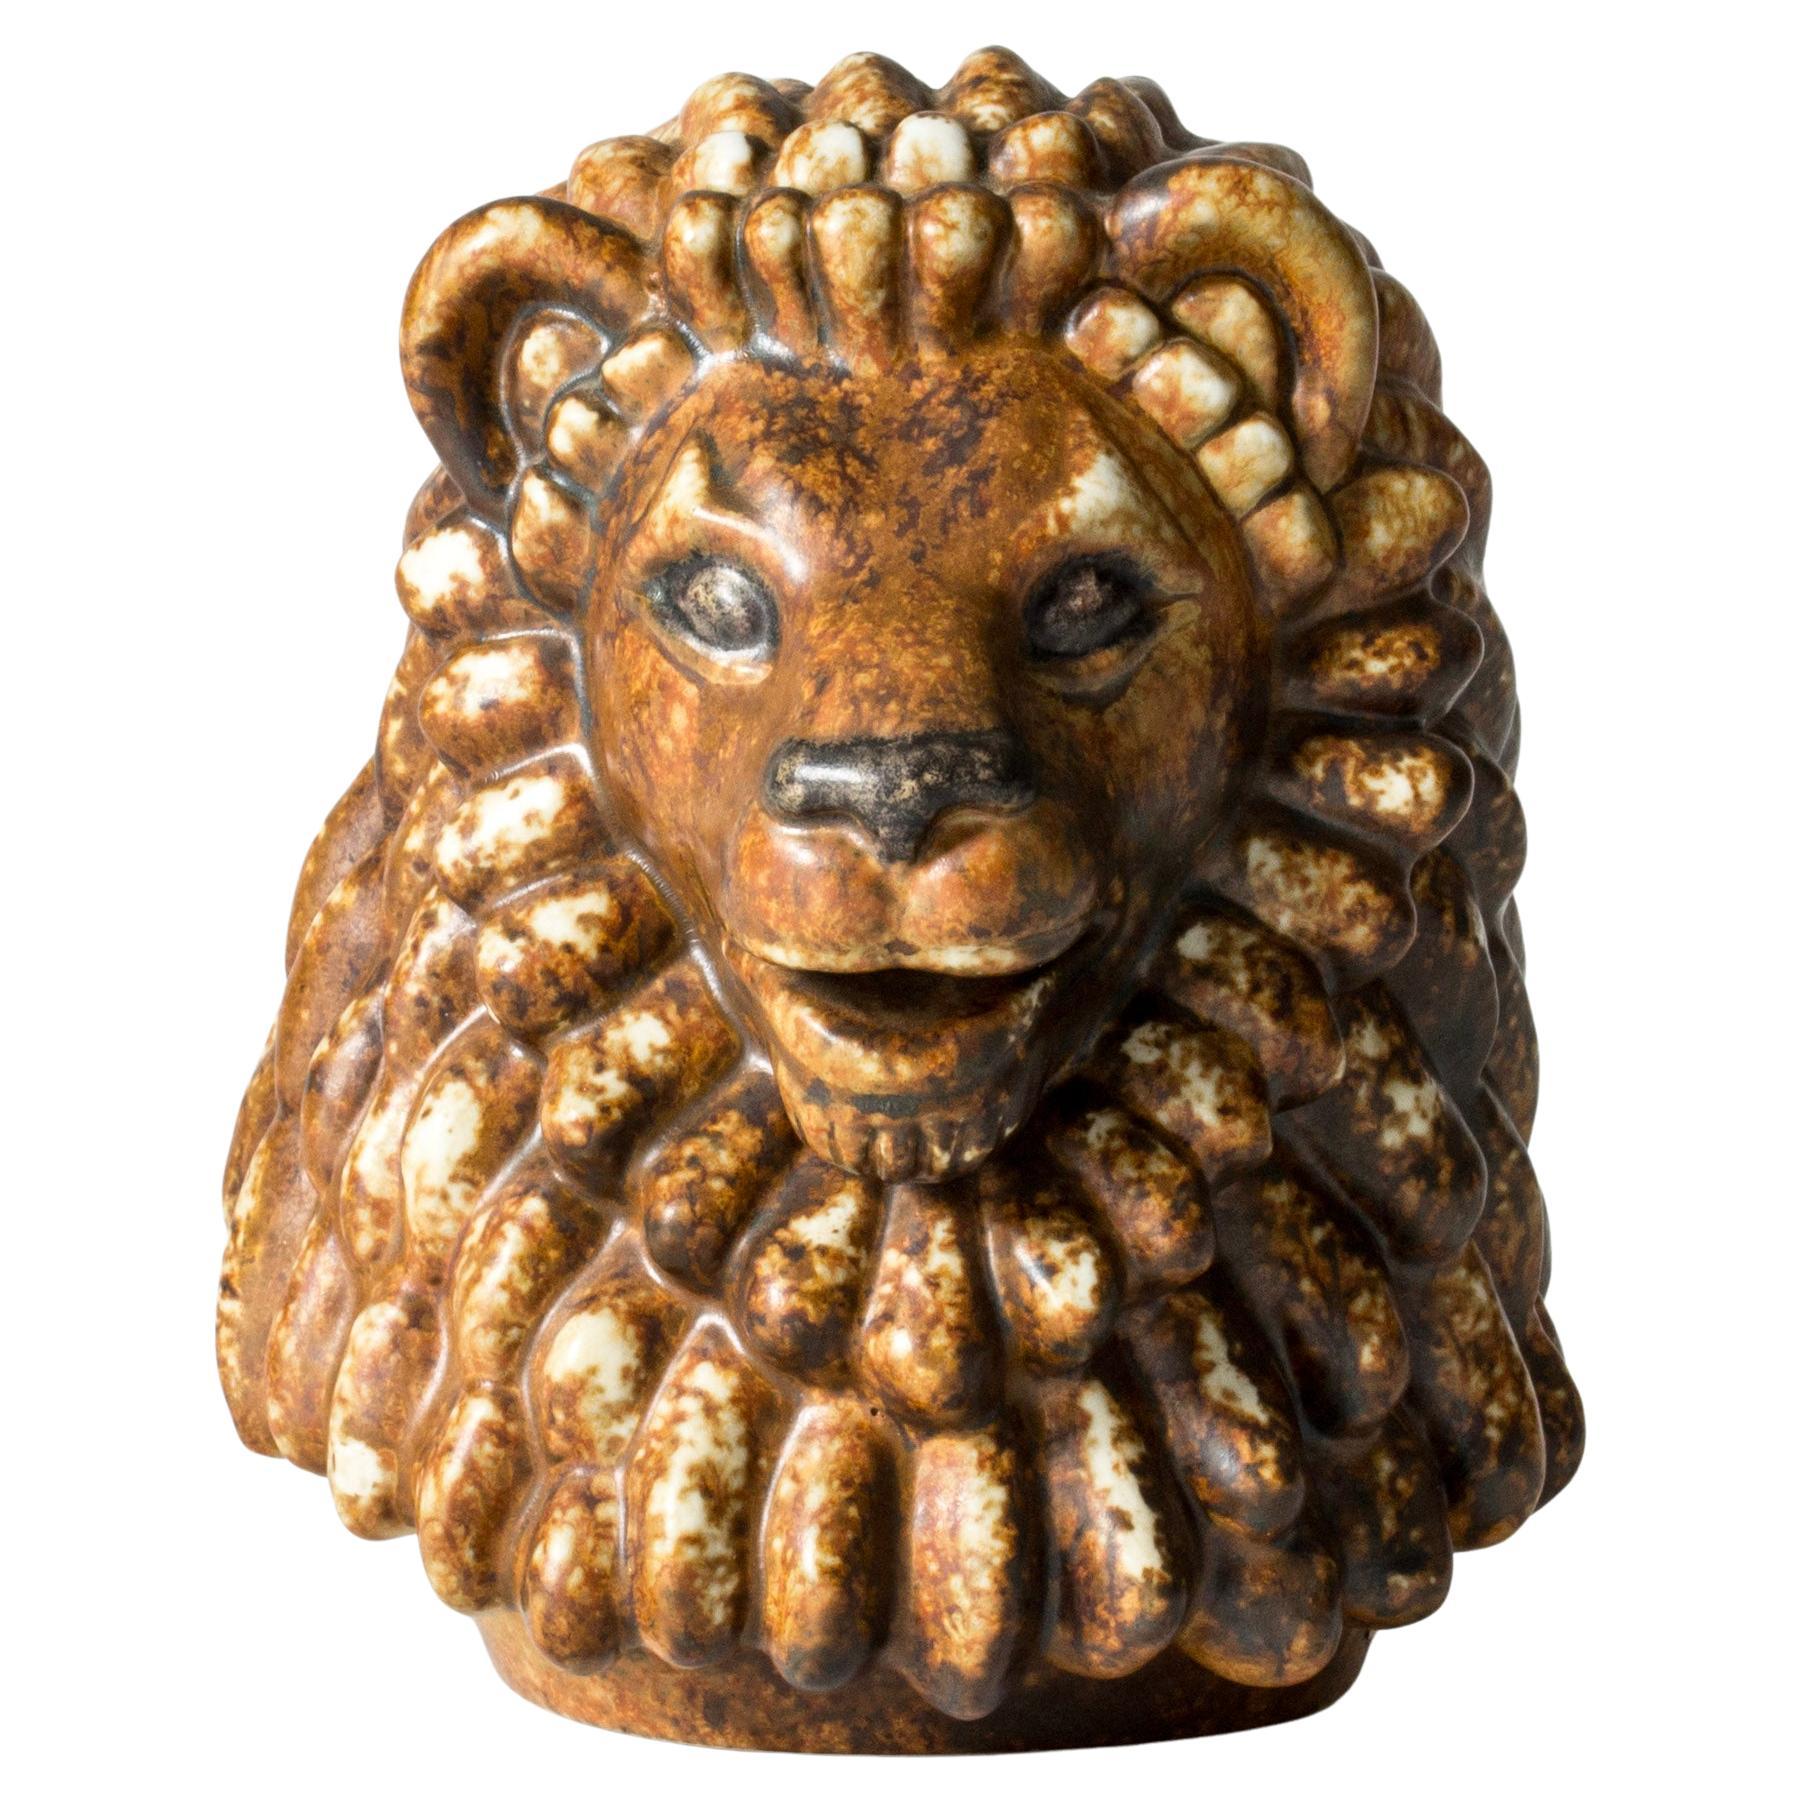 Scandinavian Midcentury Lion Figurine by Gunnar Nylund for Rörstrand, Sweden